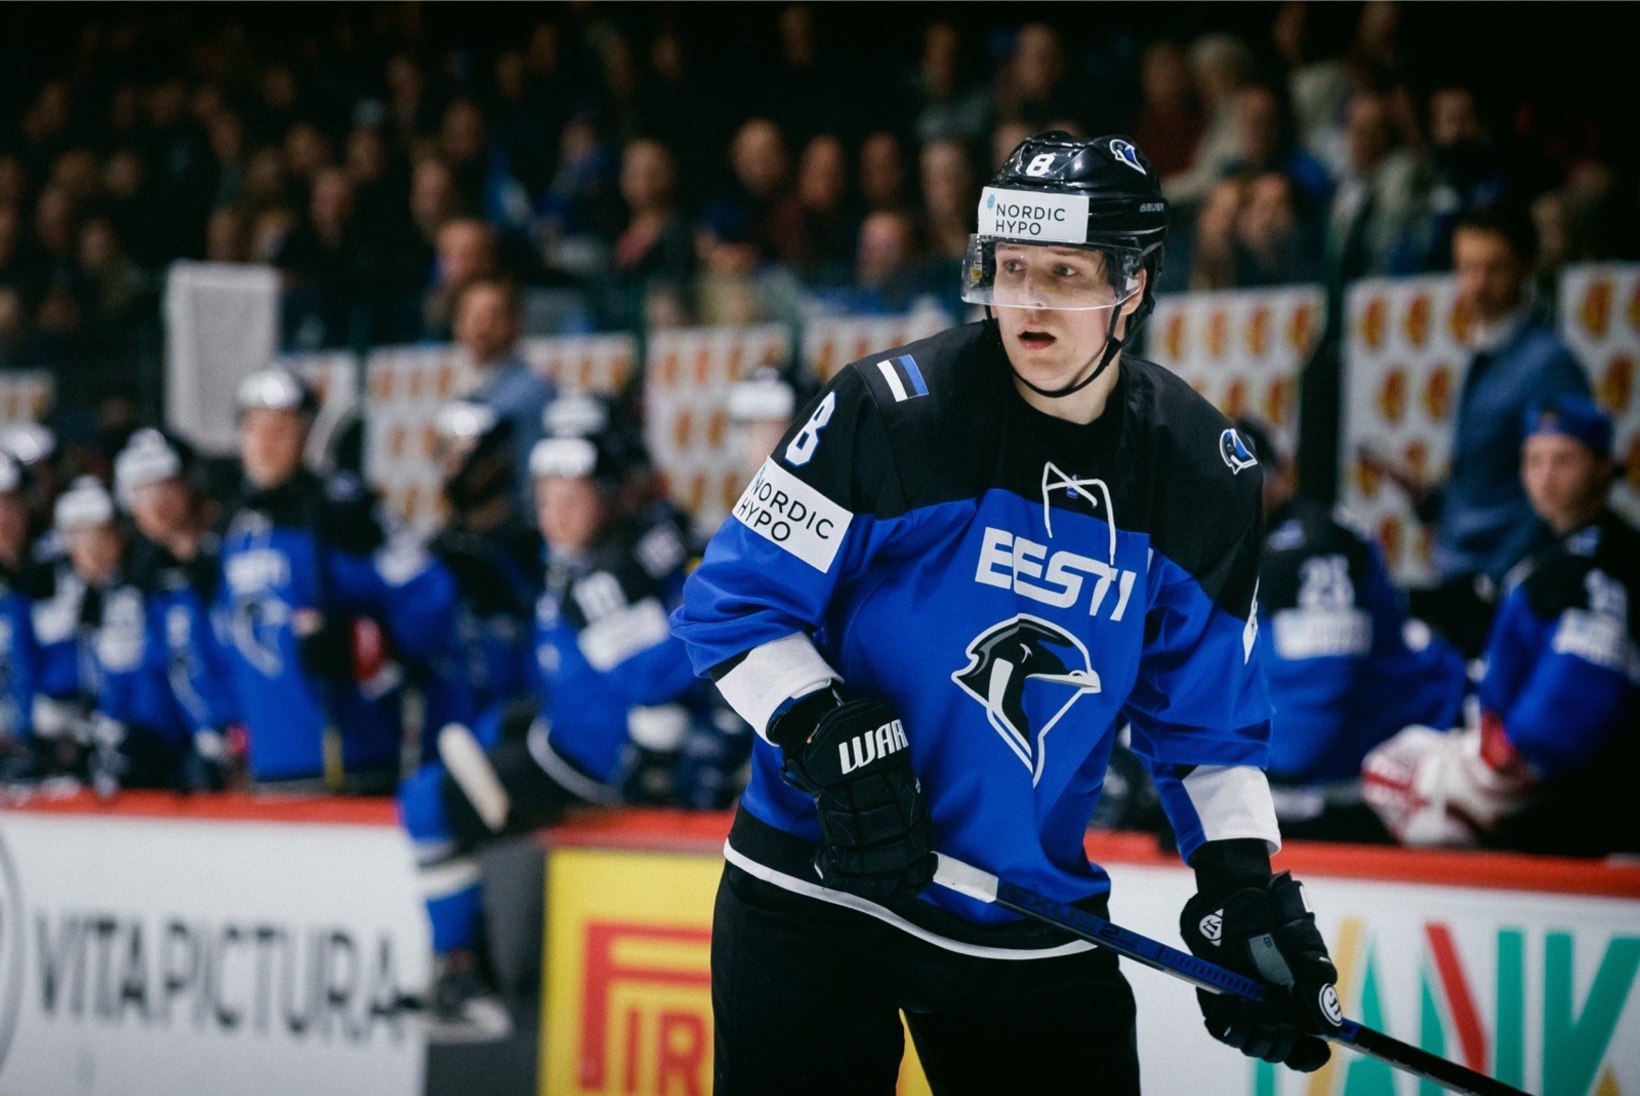 FOTOD | Eesti jäähokikoondis alustas kodust MM-turniiri kaotusega